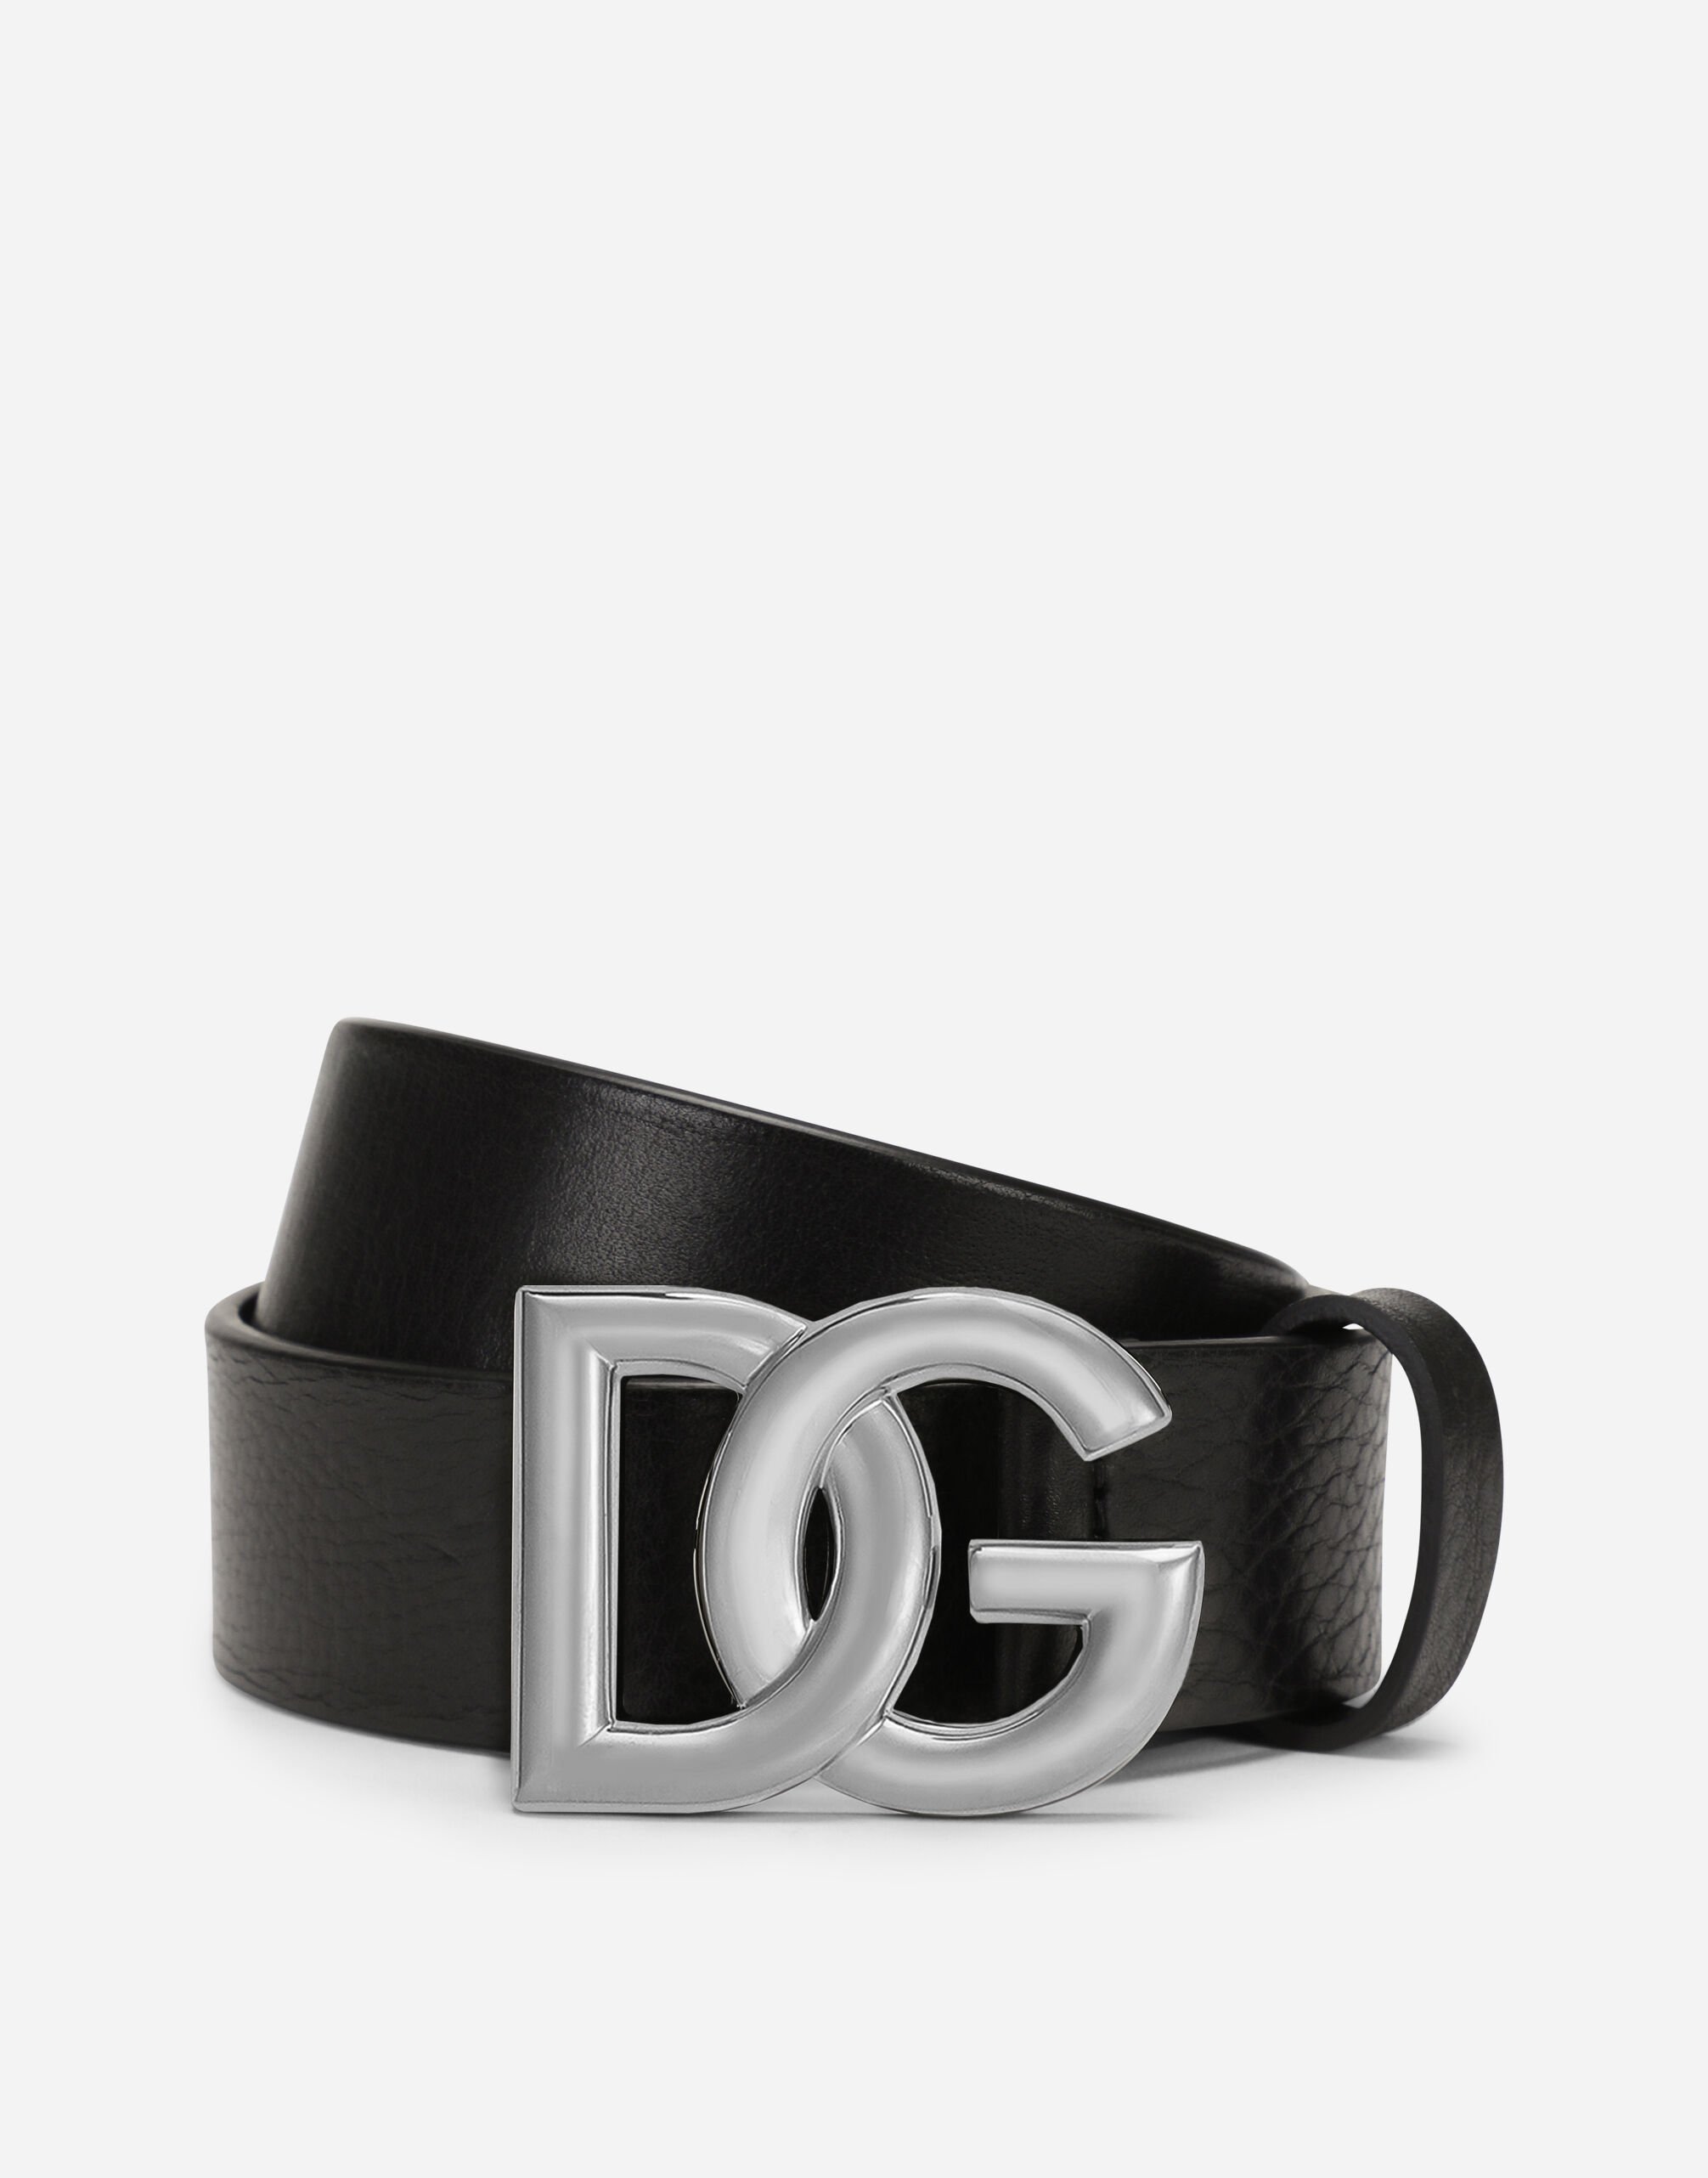 Dolce&Gabbana Tumbled leather belt with crossover DG logo buckle Black G709ETFUGAC